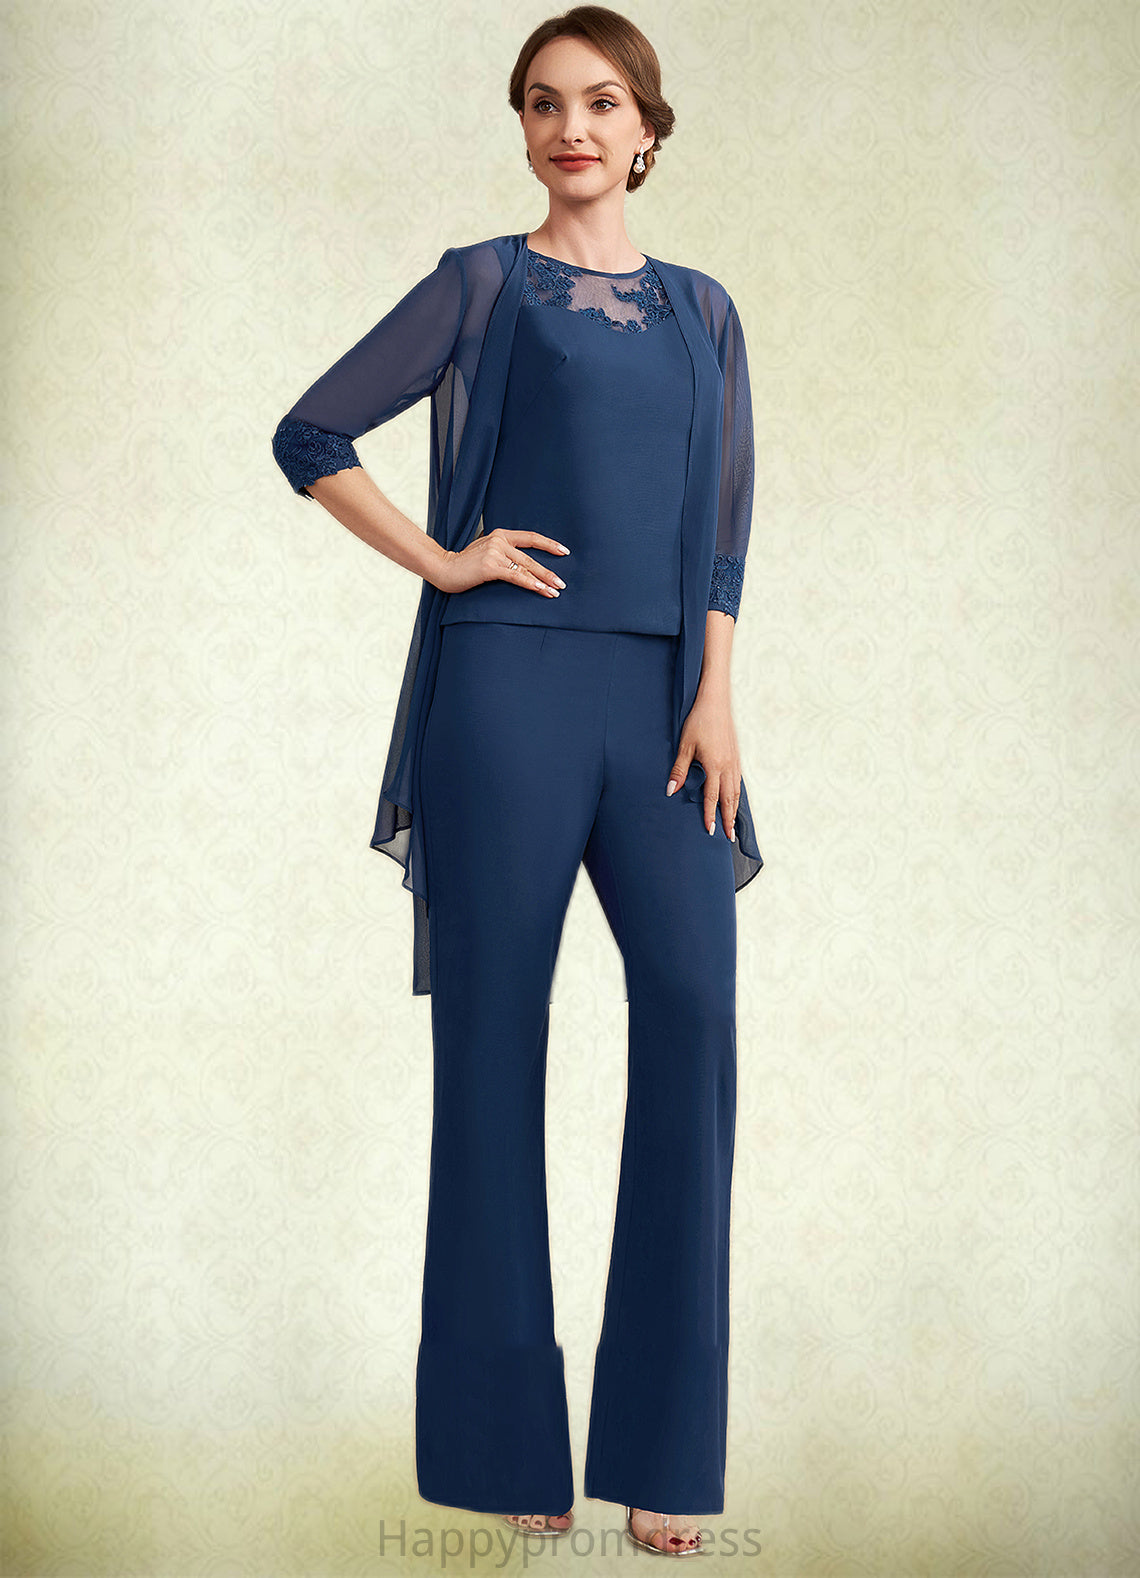 London Jumpsuit/Pantsuit Scoop Neck Floor-Length Chiffon Mother of the Bride Dress With Lace XXS126P0014687